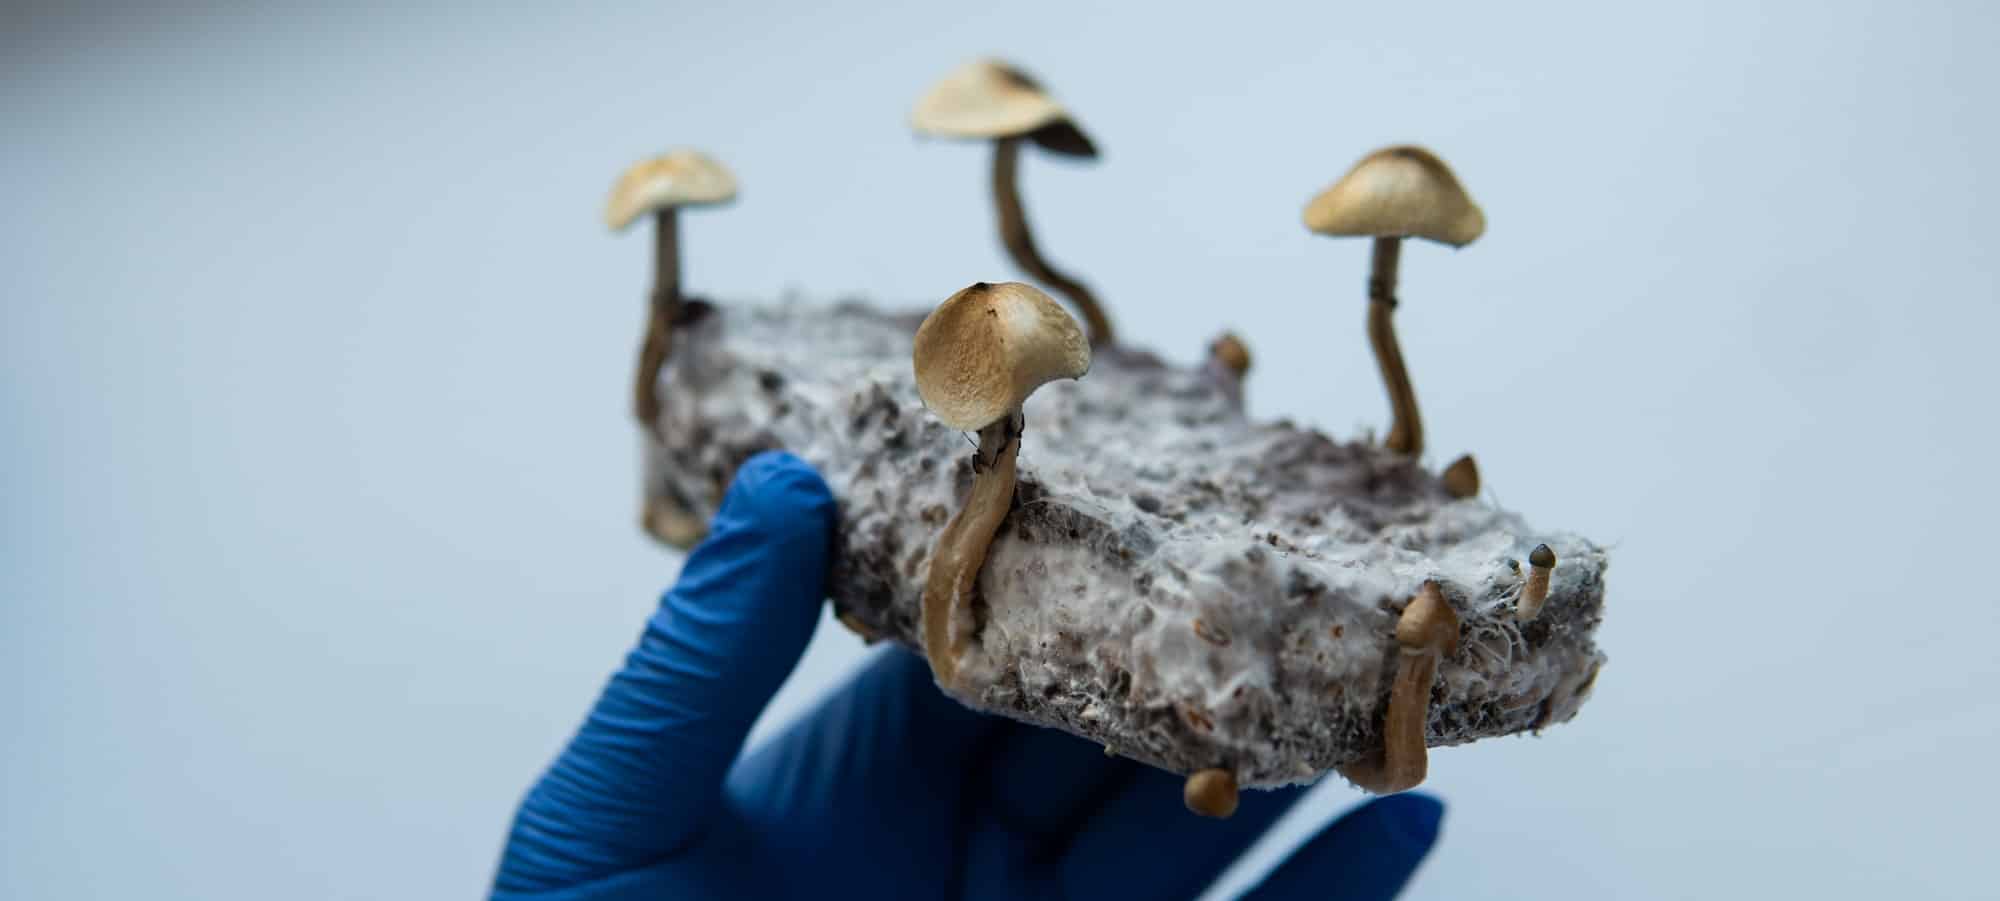 ricerca medica sui funghi psilocibinici per il trattamento della salute mentale